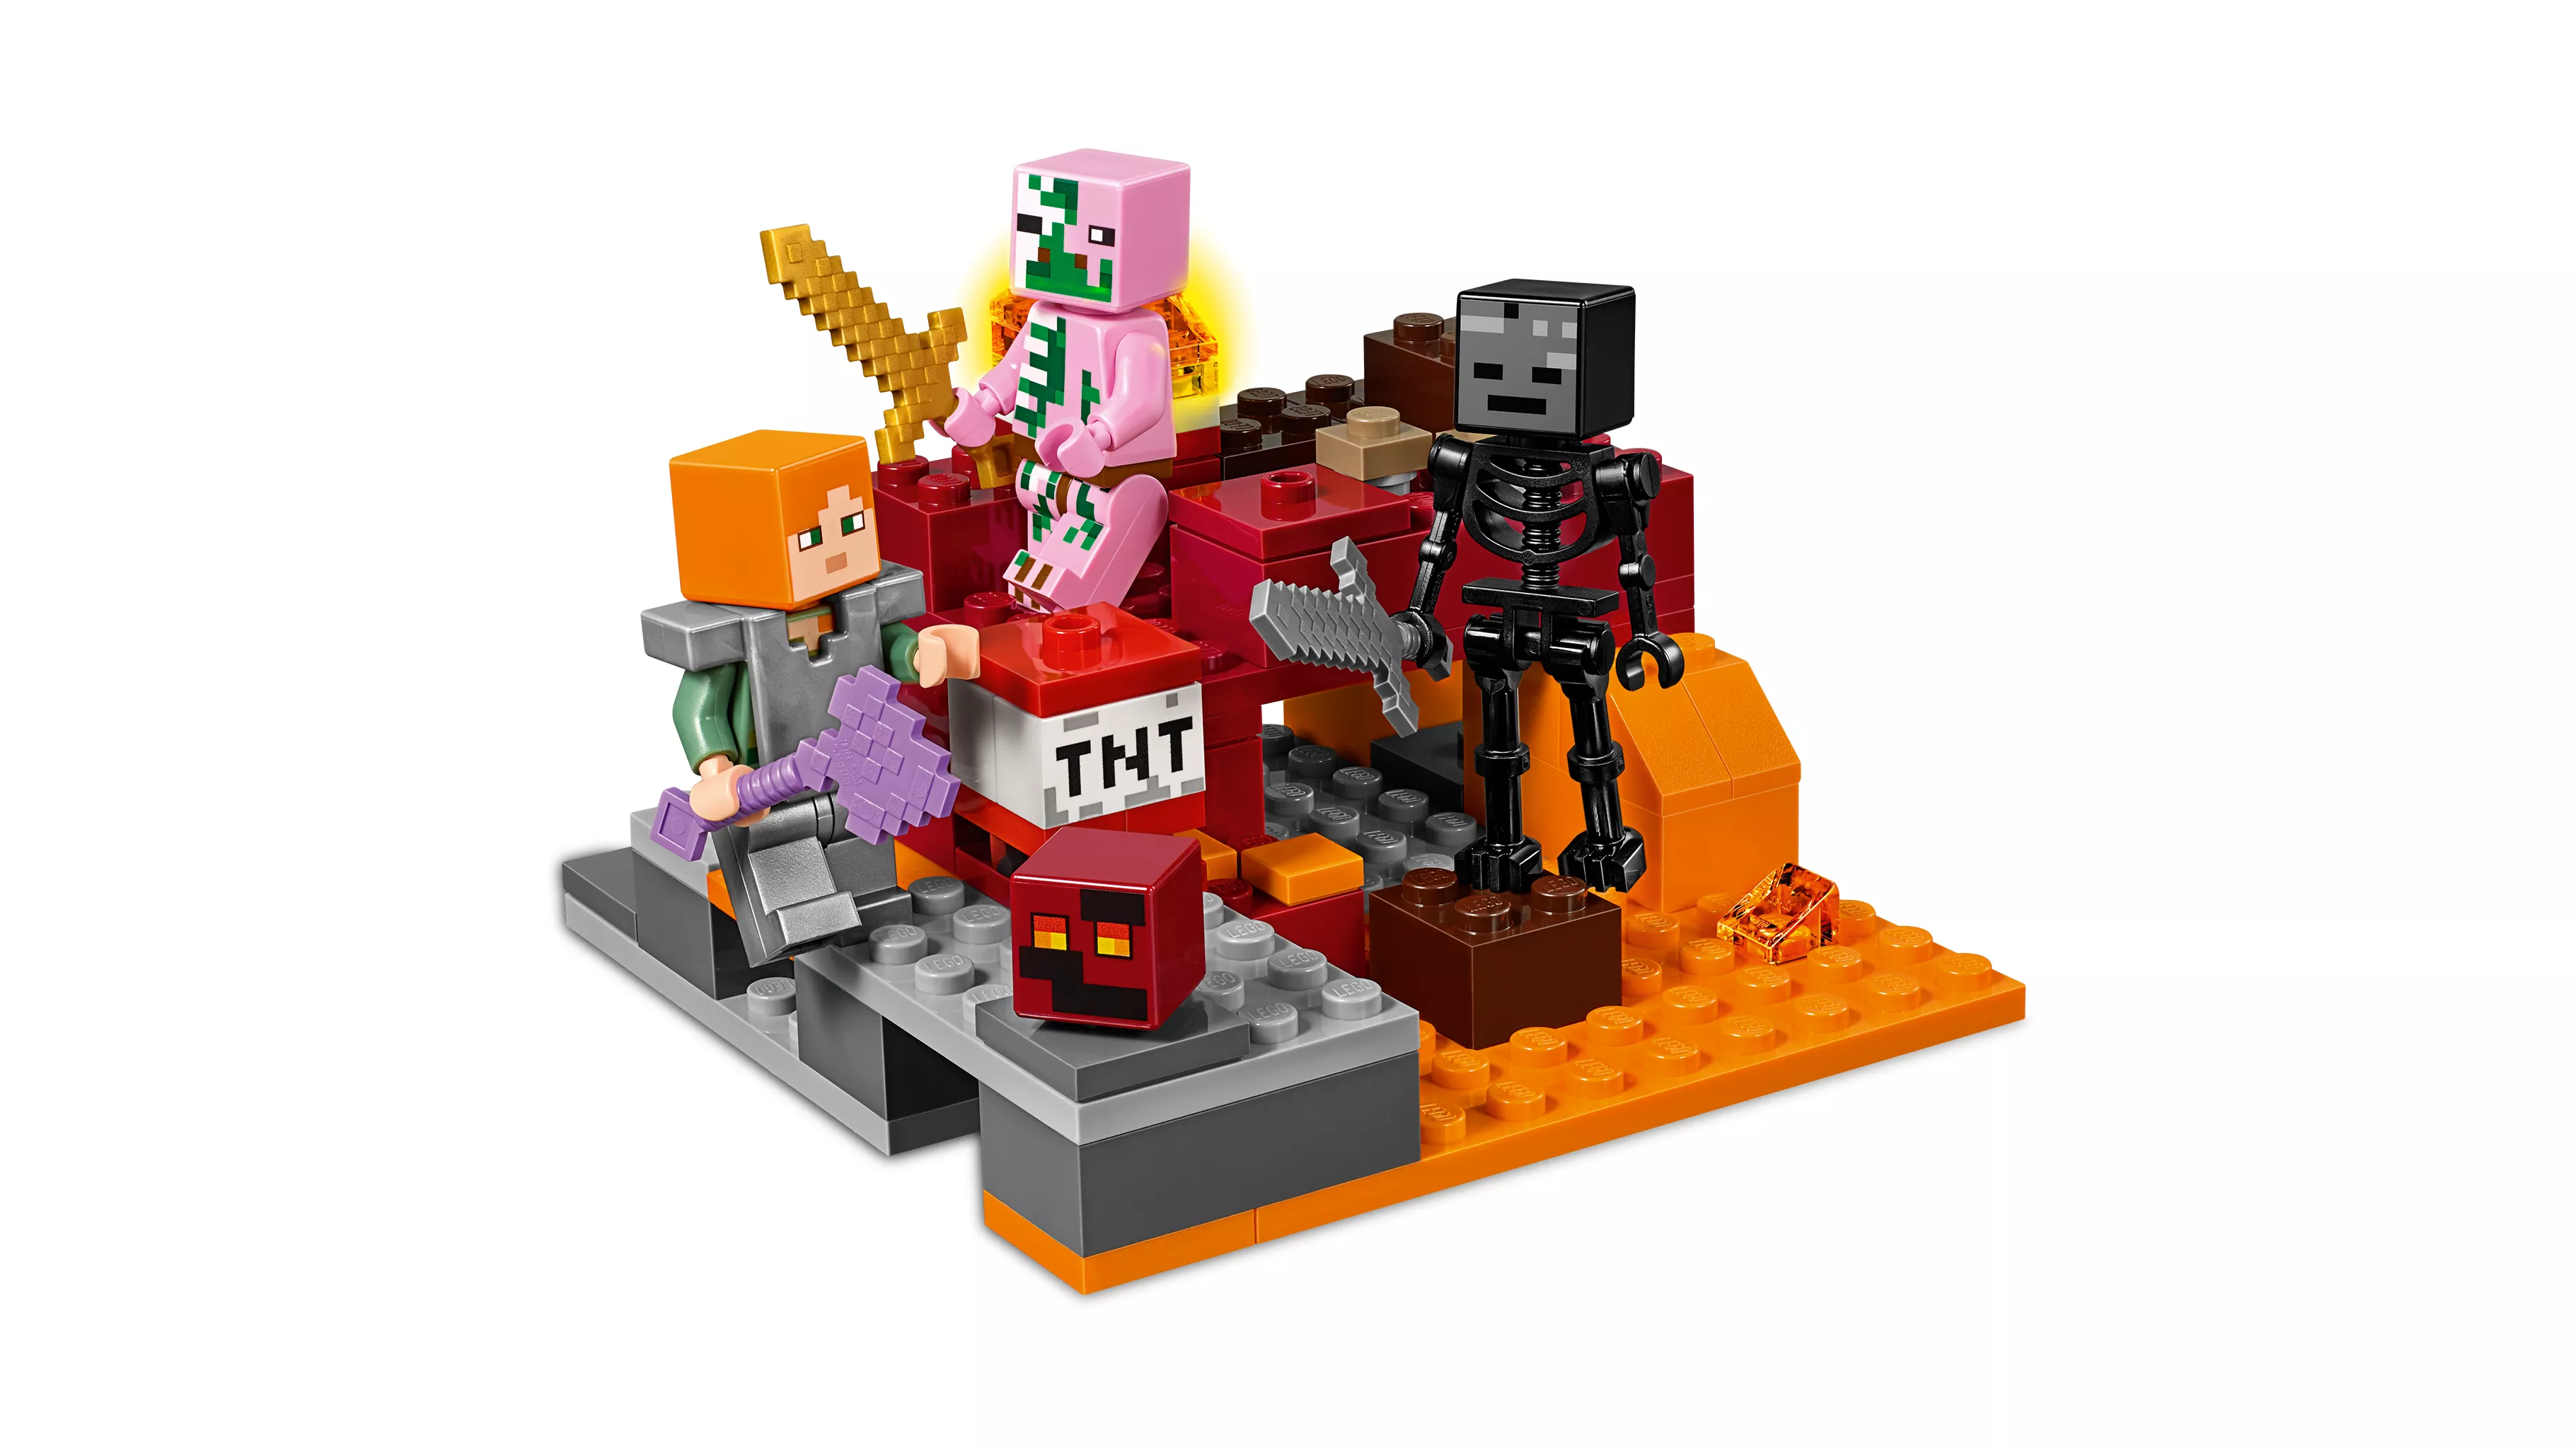 LEGO Minecraft Nether-Abenteuer - 21139